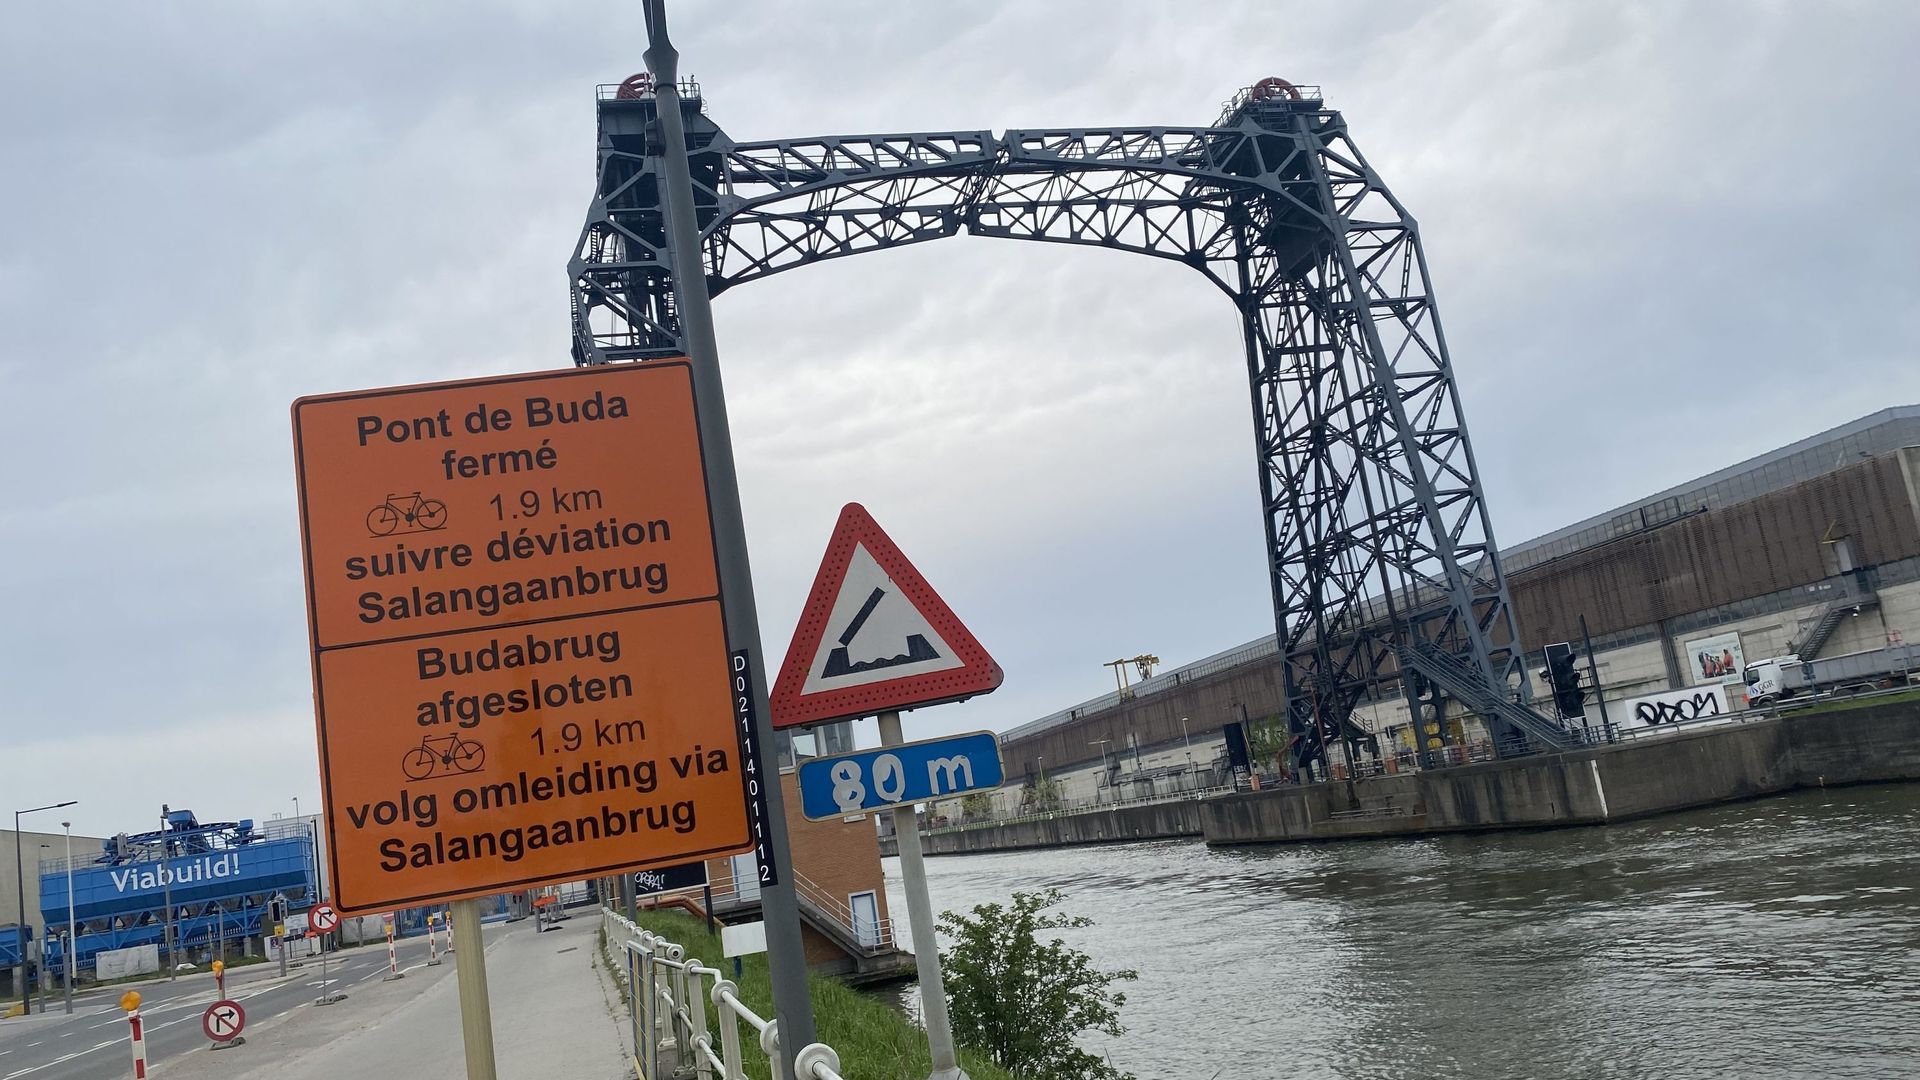 Le pont de Buda est fermé et démonté depuis l’accident.